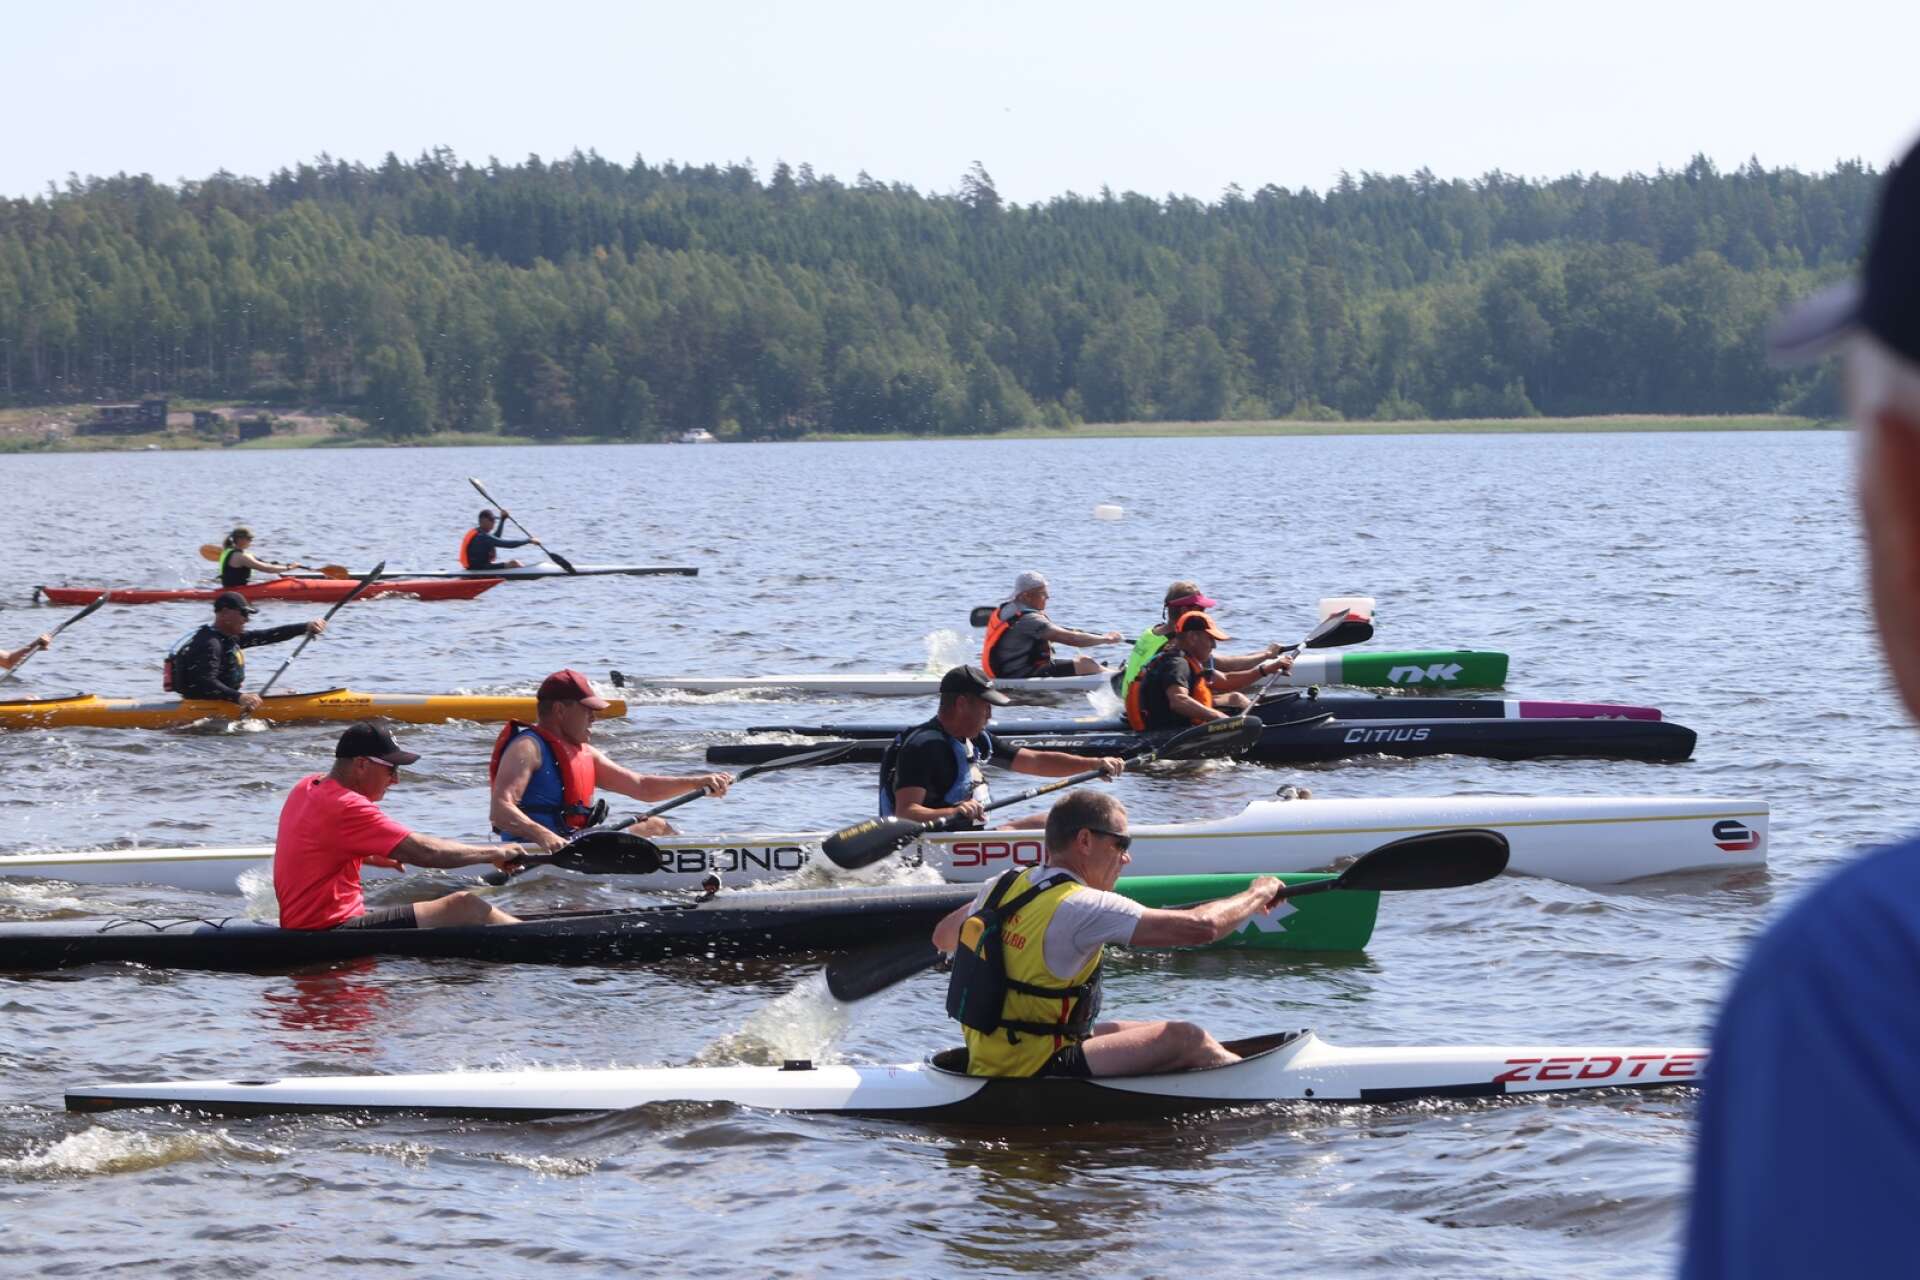 Åmåls kanotförening anordnade på lördagen ett jubileumslopp, som en del av föreningens 90-årsfirande.